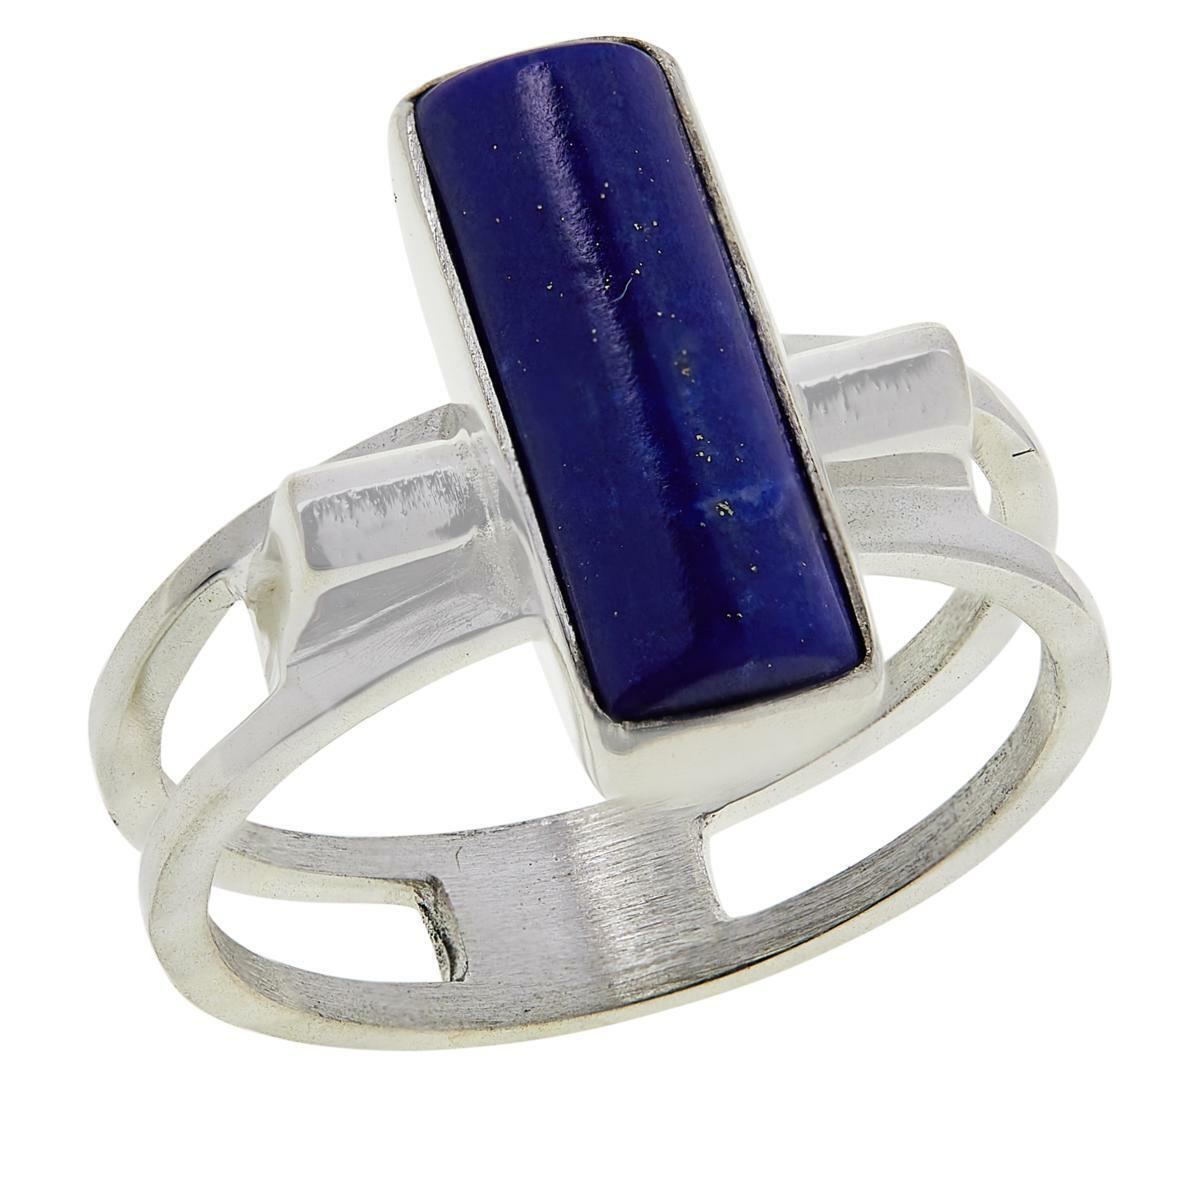 Jay King Sterling Silver Rectangular Lapis Ring, Size 6